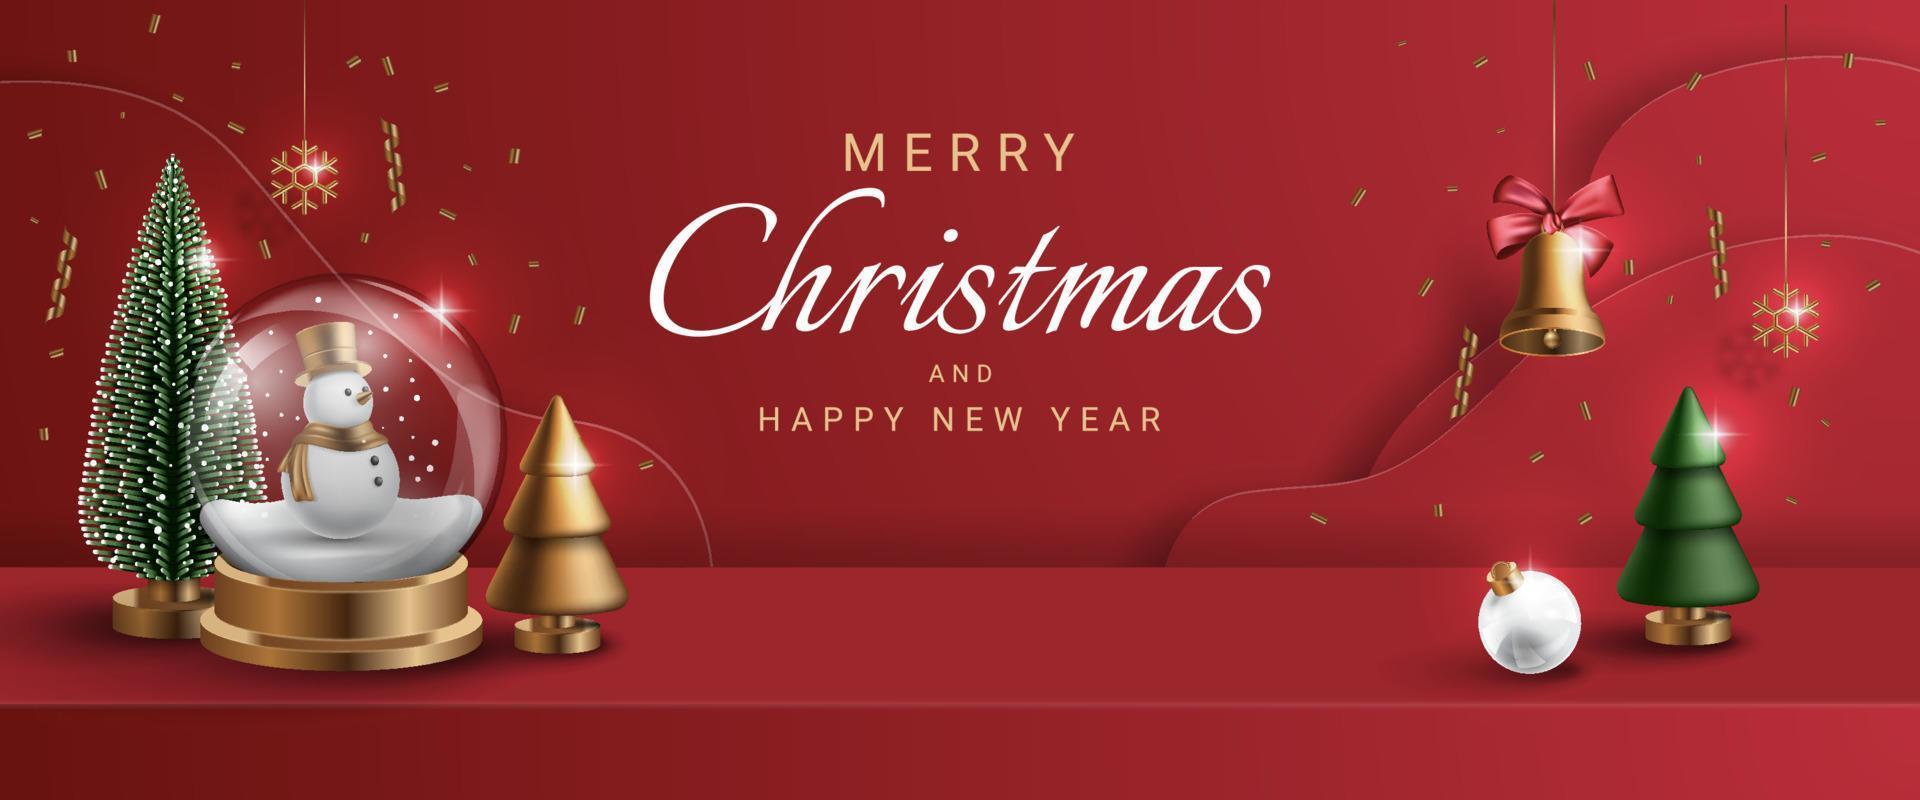 Frohe Weihnachten-Banner mit realistischer Weihnachtsverzierung. Weihnachtsschneemann, Baum und Glocke. Vektor-Illustration. vektor